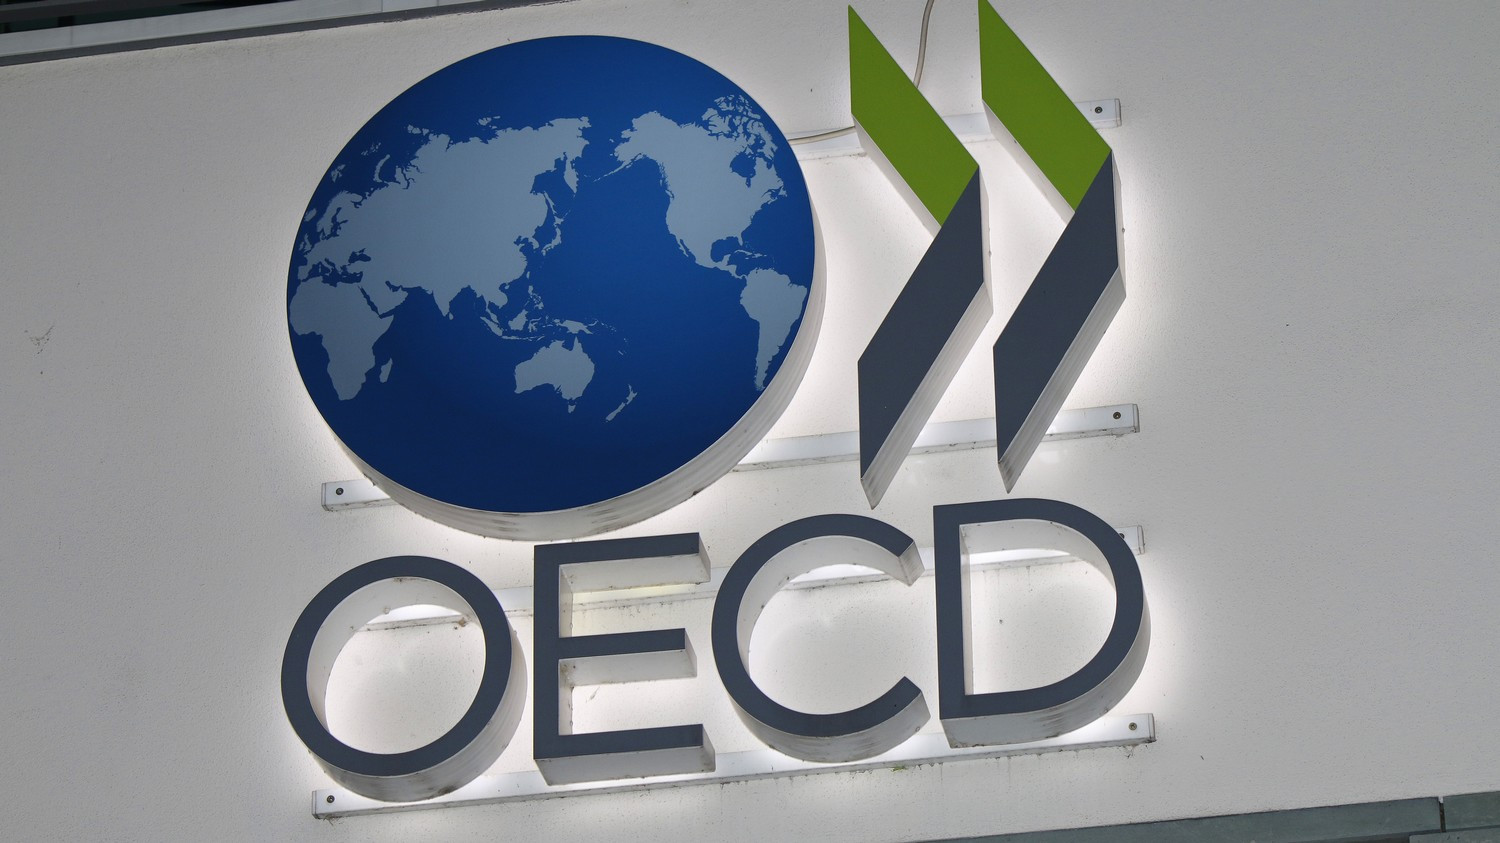 Papunësia në vendet e OECD-së shënon ulje të lehtë gjatë muajit mars